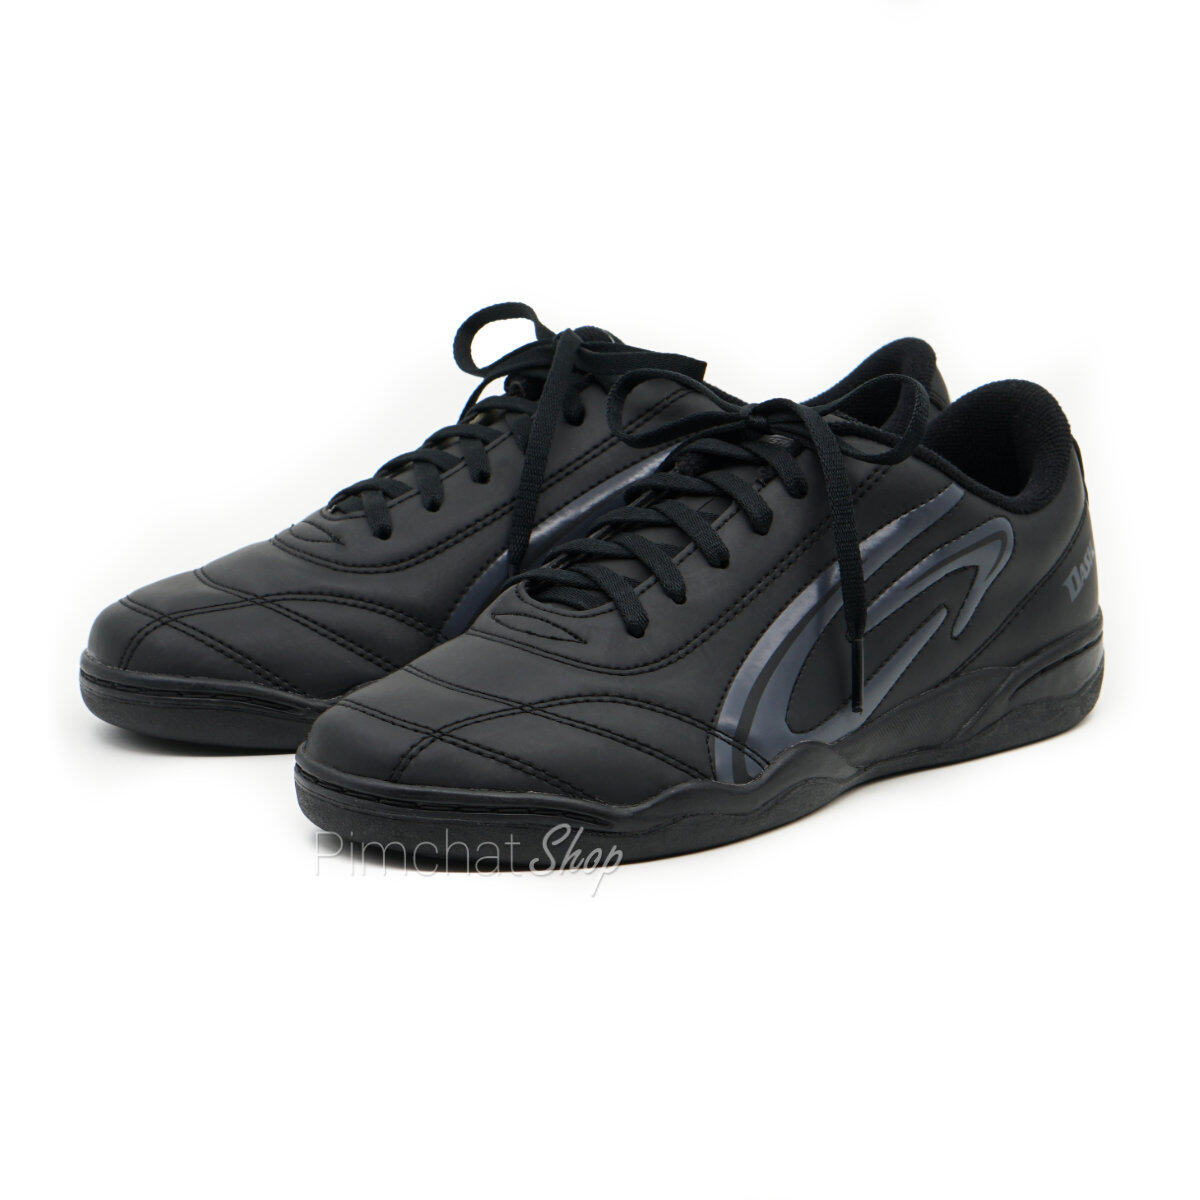 GIGA รองเท้าฟุตซอล รองเท้ากีฬา รุ่น DASH II สีดำ